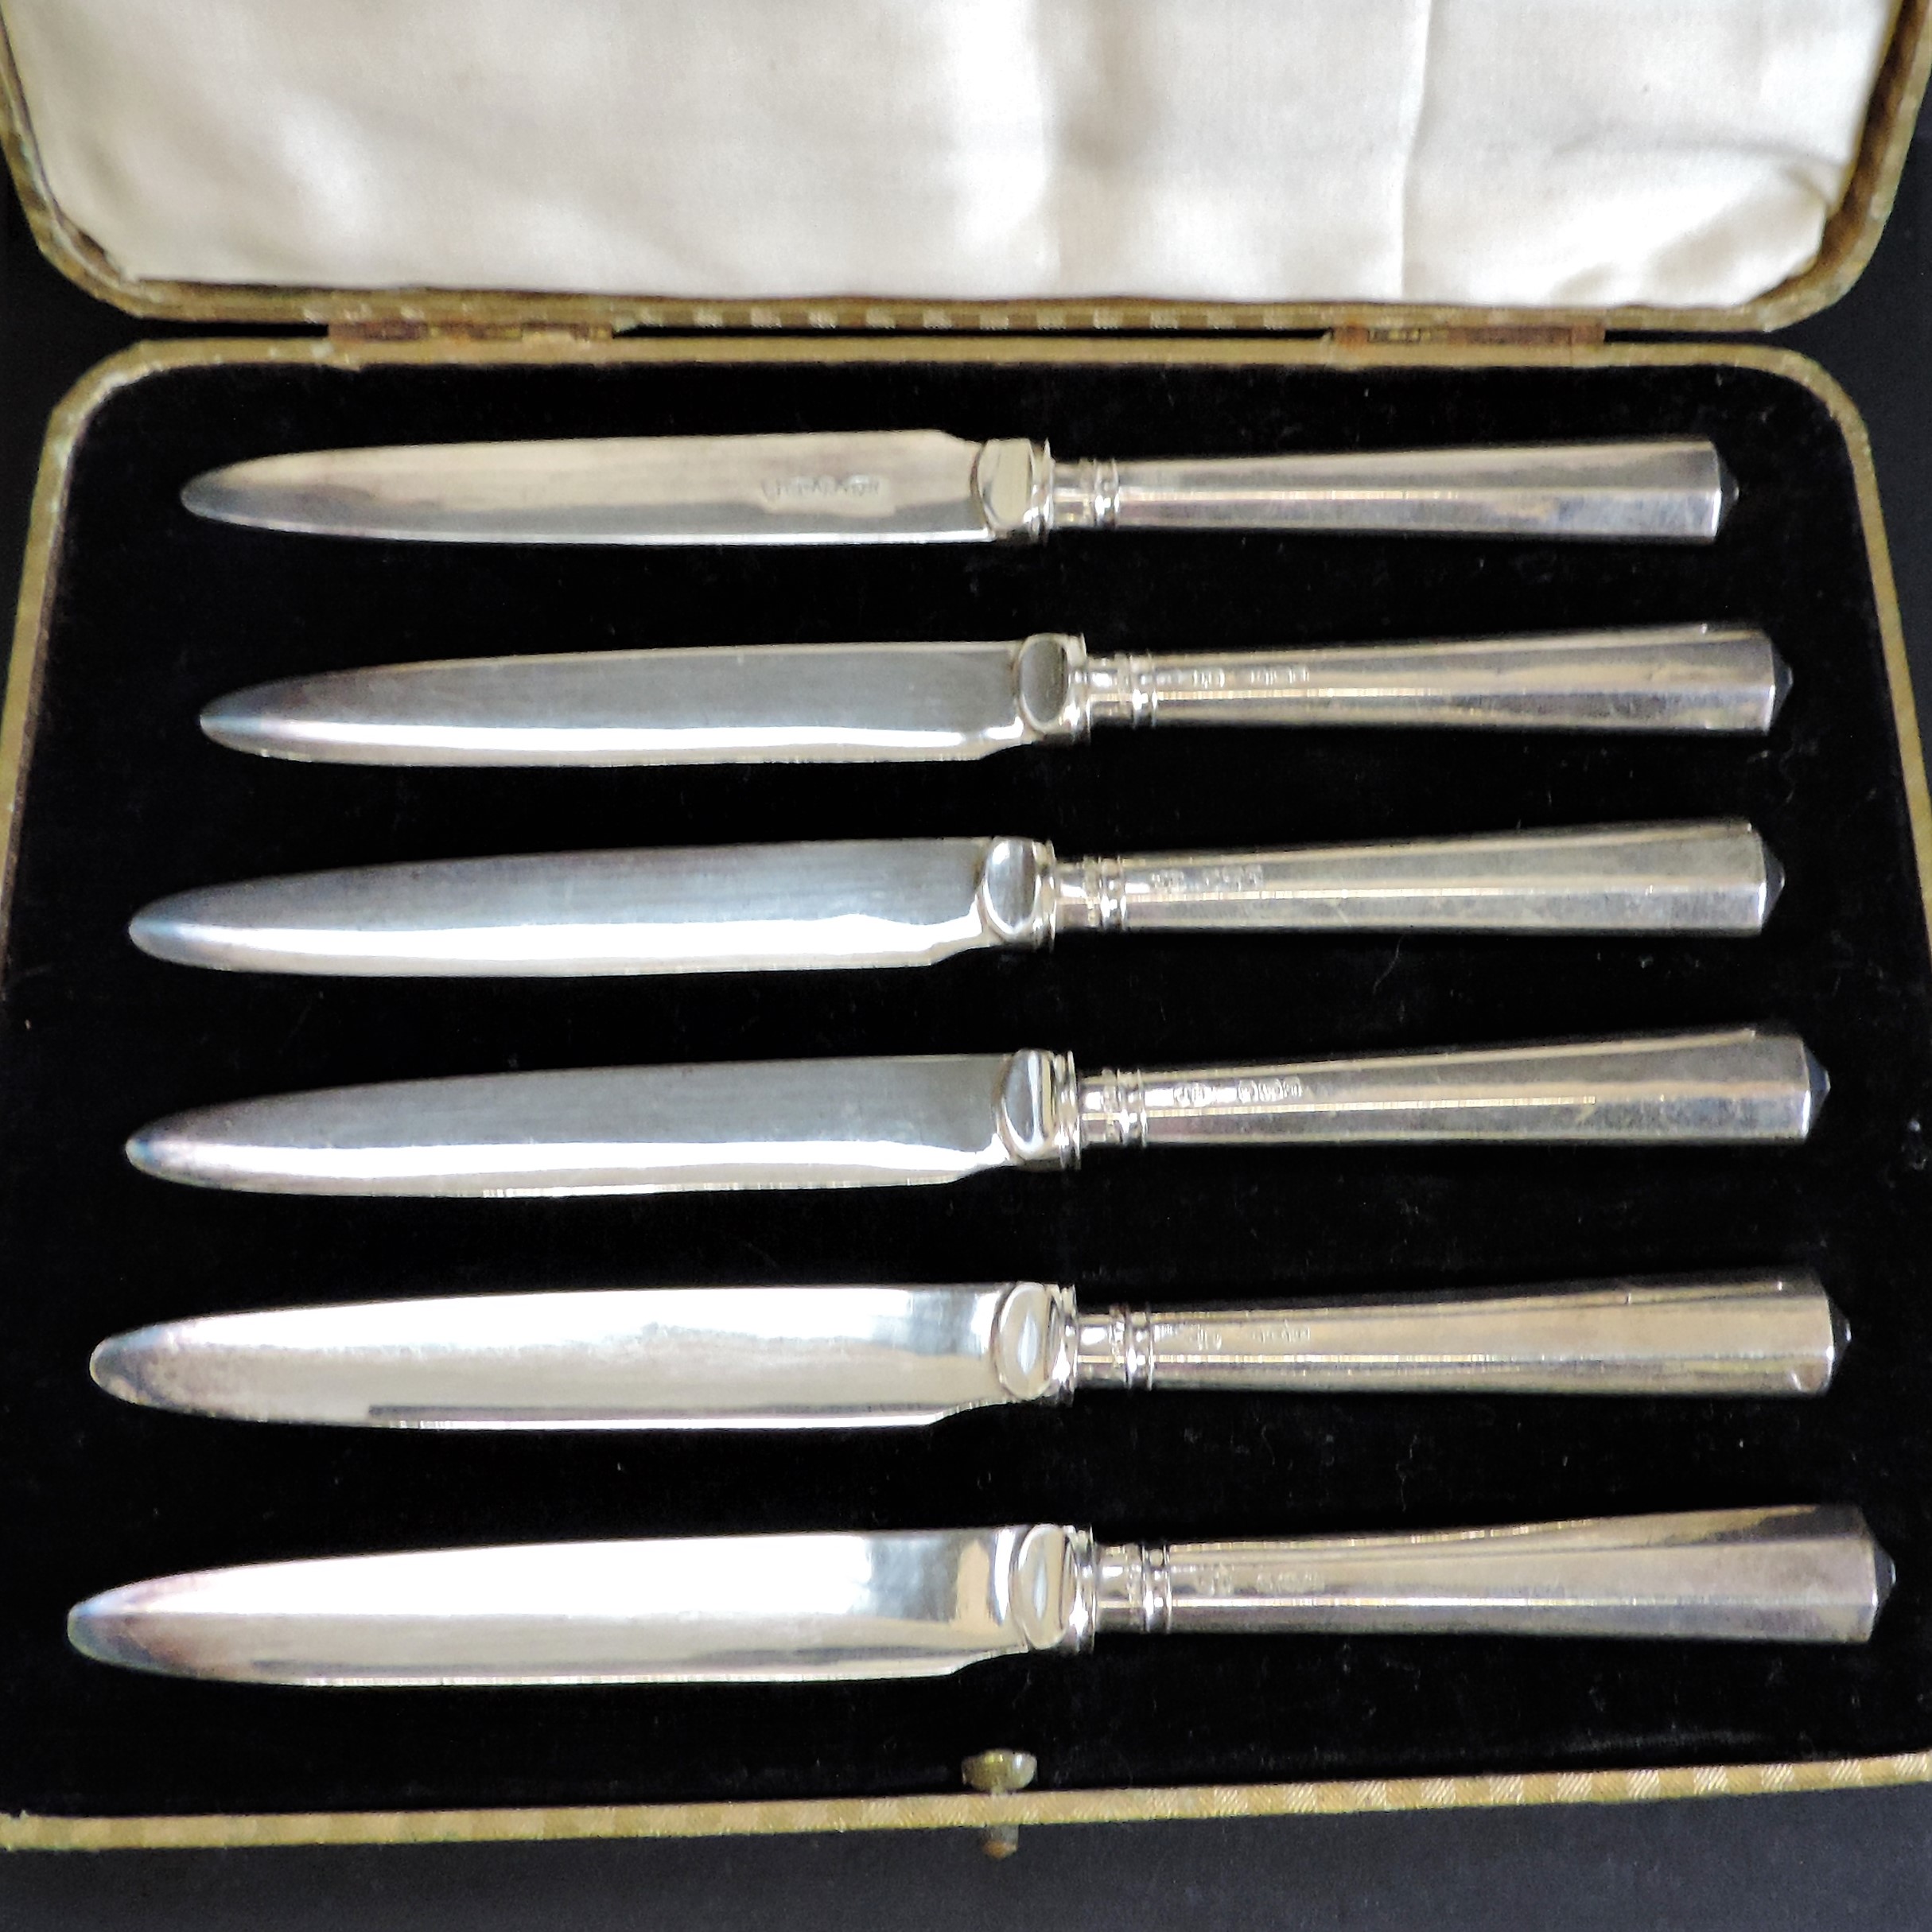 John Biggin Silver Handled Tea Knives Hallmark Date 1933. A cased set 6 silver handled tea knives